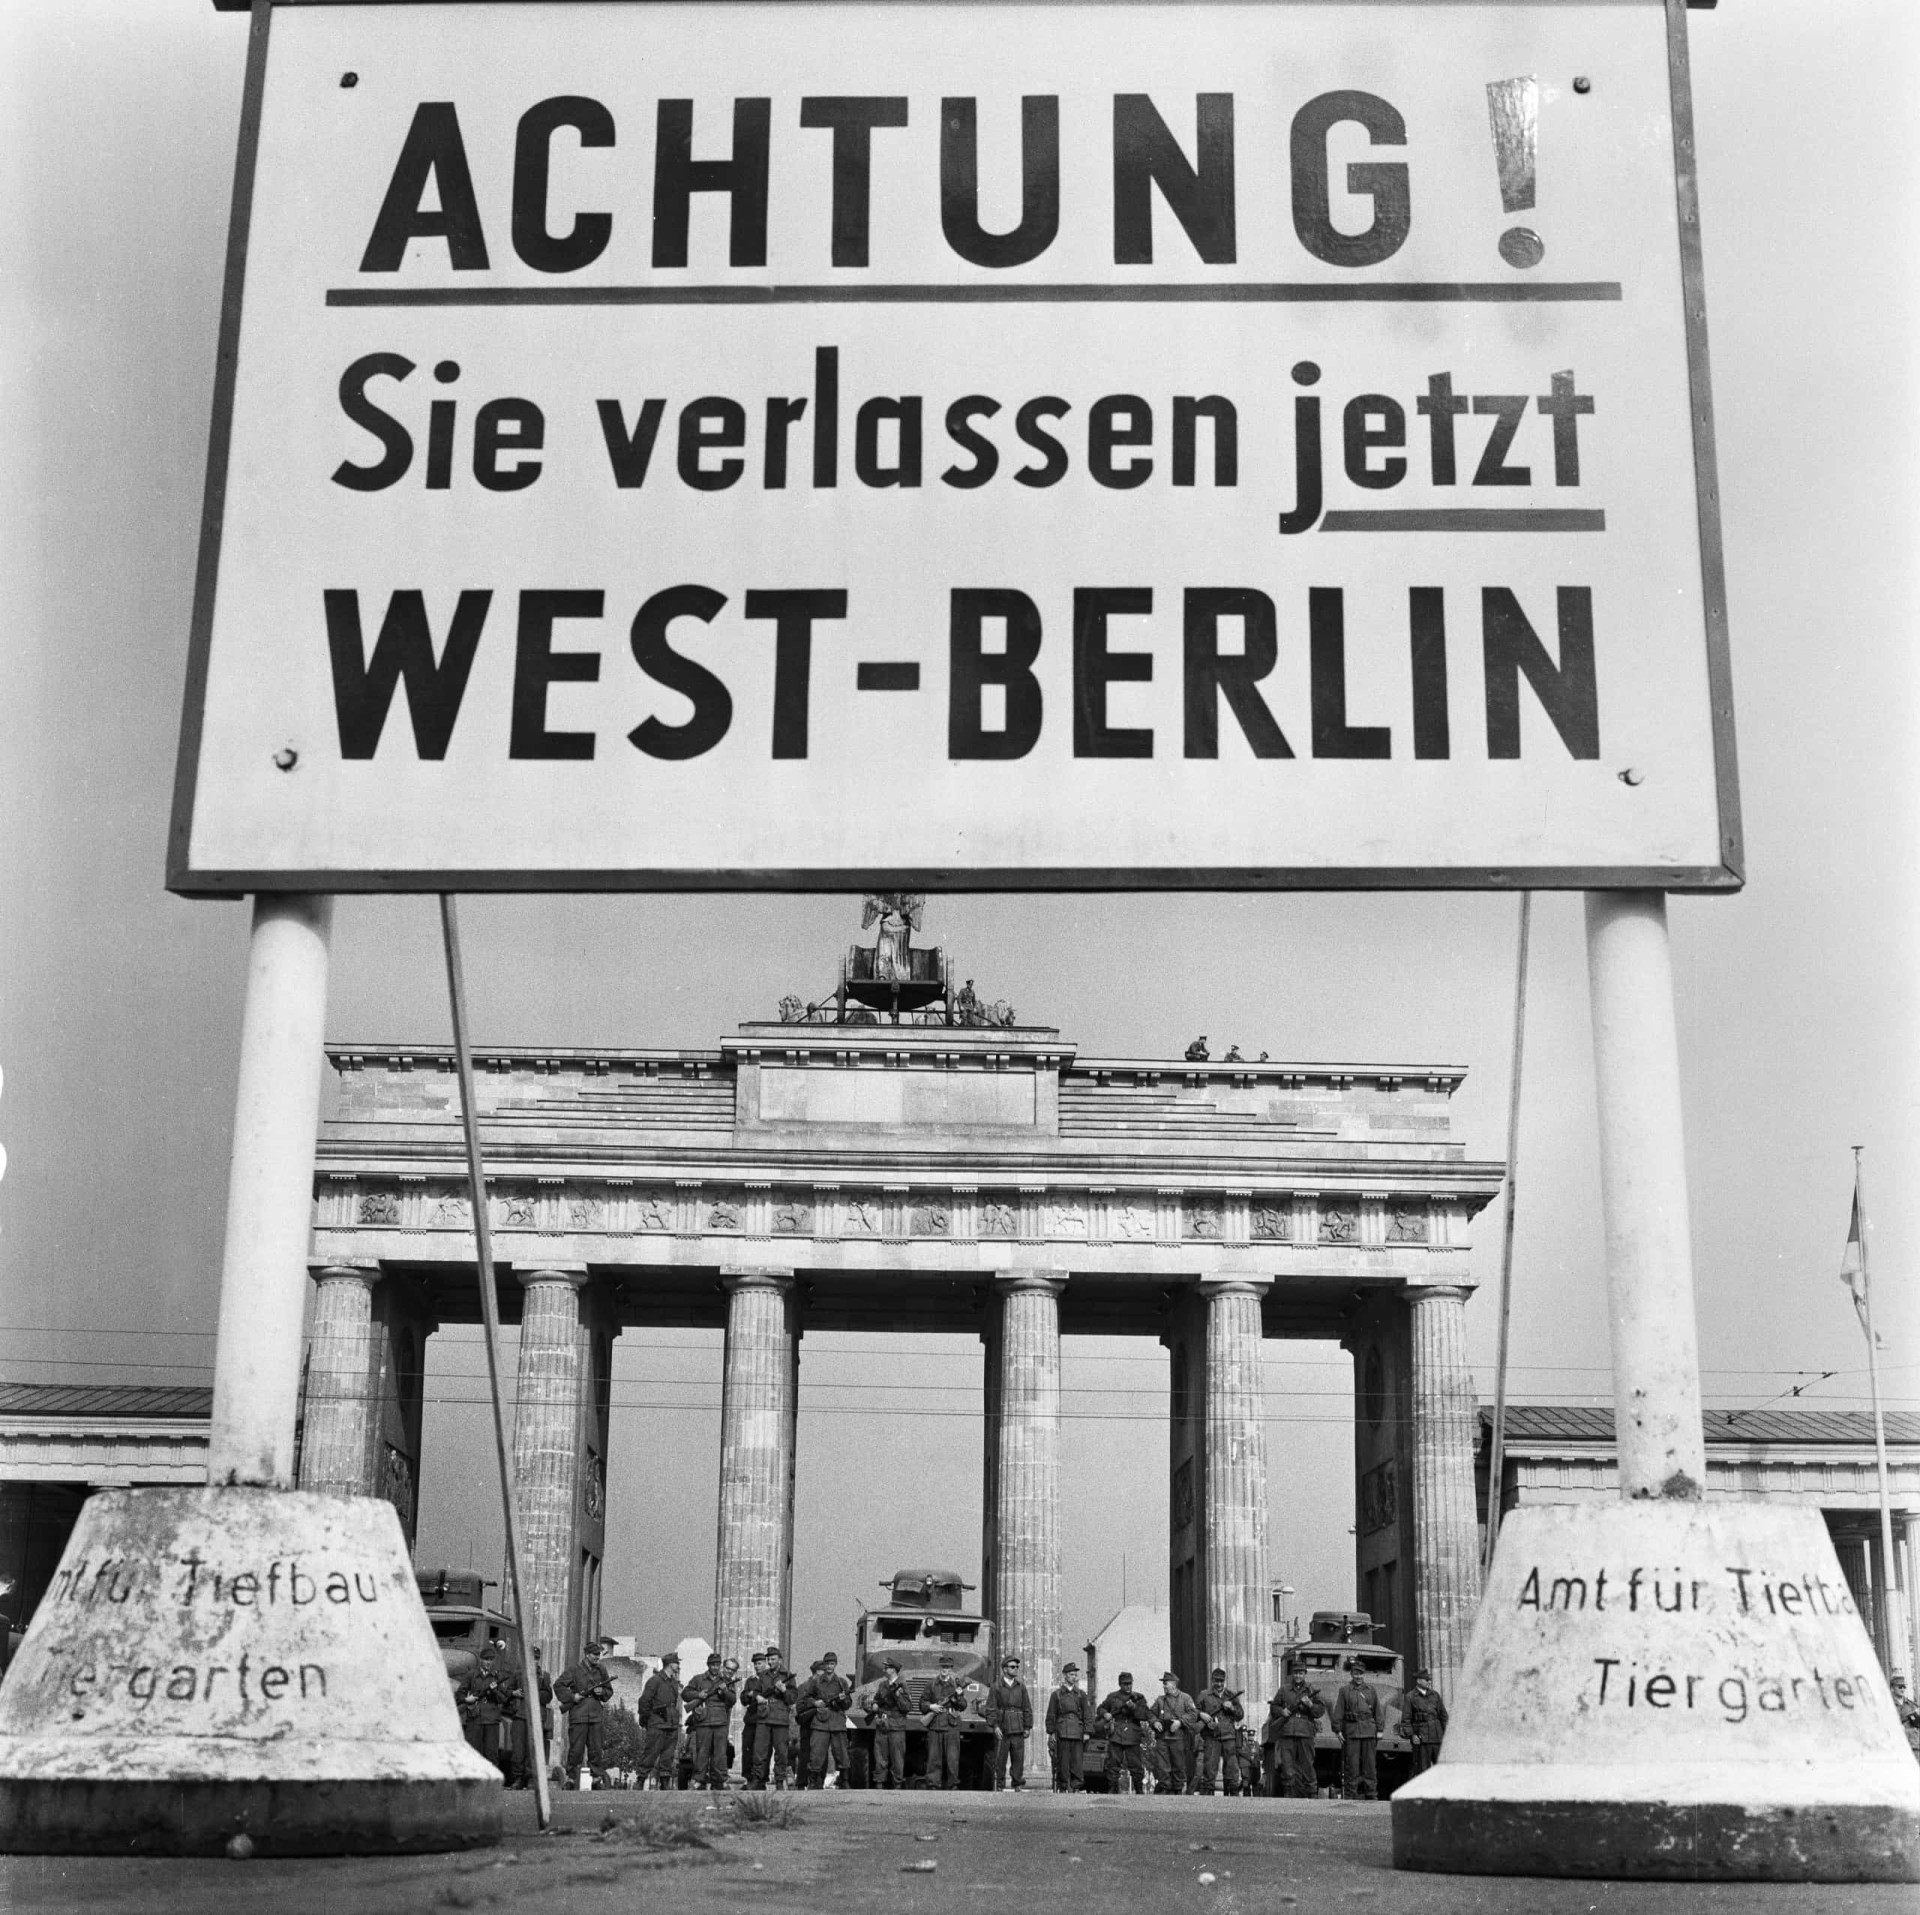 <p>"Achtung! Sie verlassen jetzt West-Berlin", steht auf dem Schild. Nach dem <a href="https://de.starsinsider.com/lifestyle/357336/faszinierende-fotos-vom-zweiten-weltkrieg" rel="noopener">Zweiten Weltkrieg</a> wurde Berlin in vier Sektoren aufgeteilt: Frankreich kontrollierte den nordwestlichen, England den westlichen und die USA den südwestlichen Teil der Stadt, während der gesamte östliche Teil Berlins der Sowjetunion zugewiesen wurde.</p>